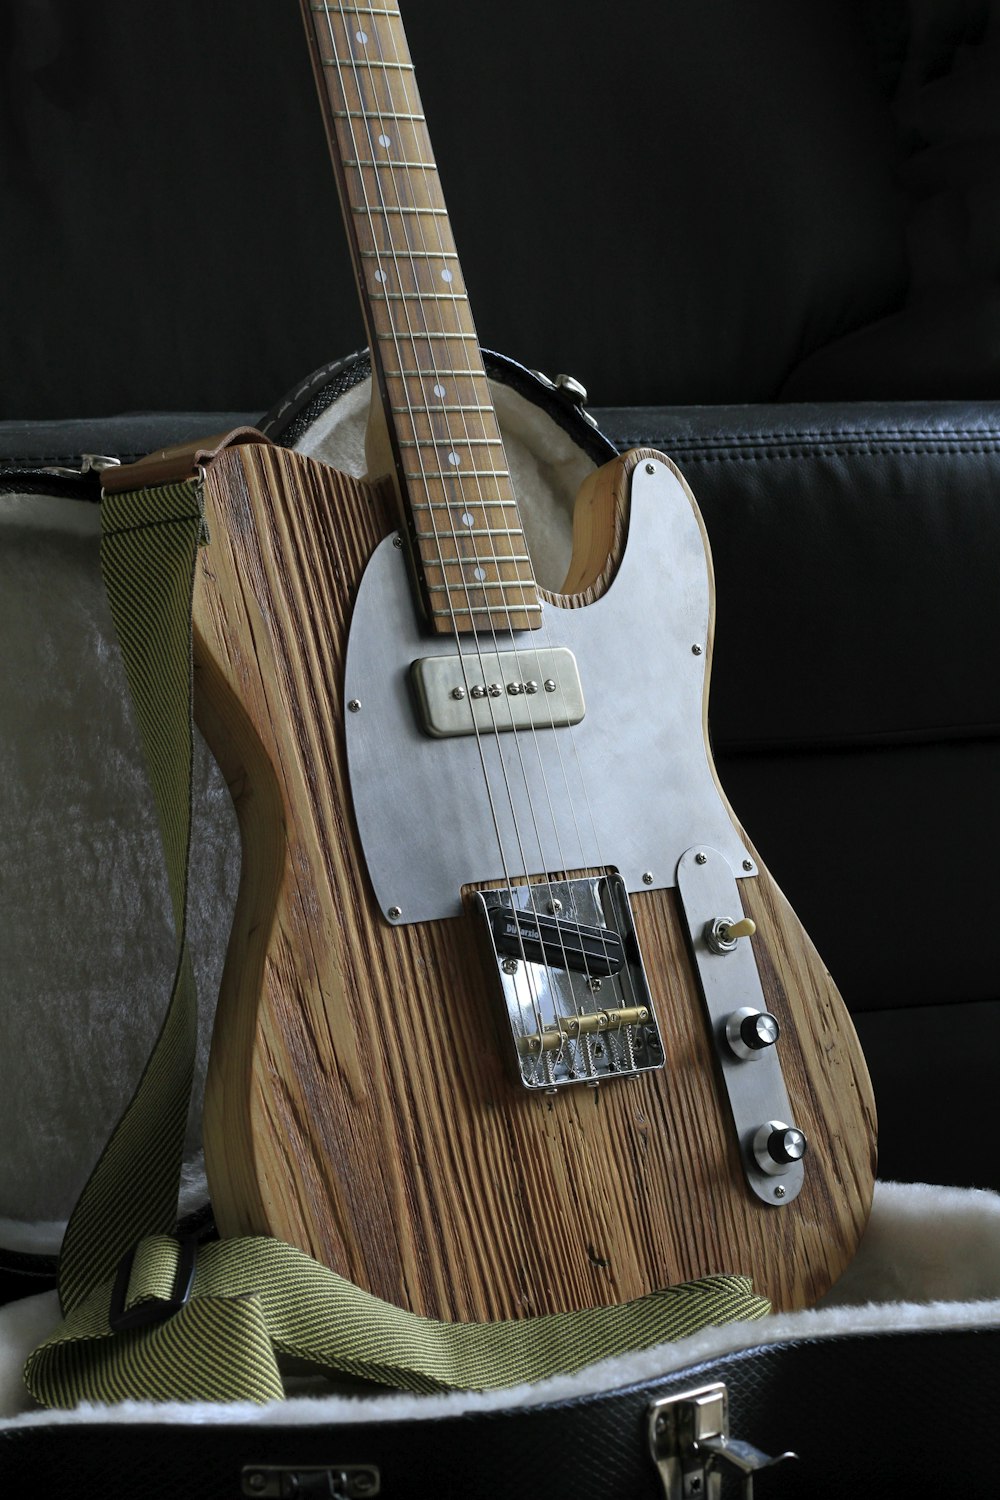 guitarra elétrica stratocaster marrom e branca